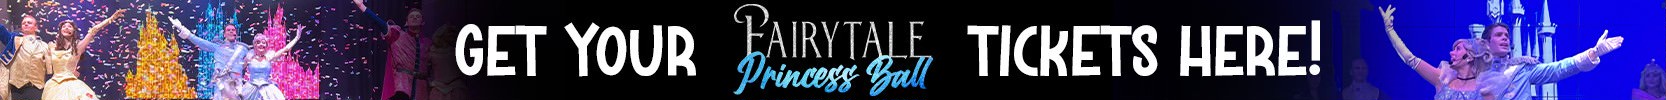 Fairytale Princess Ball Ticket